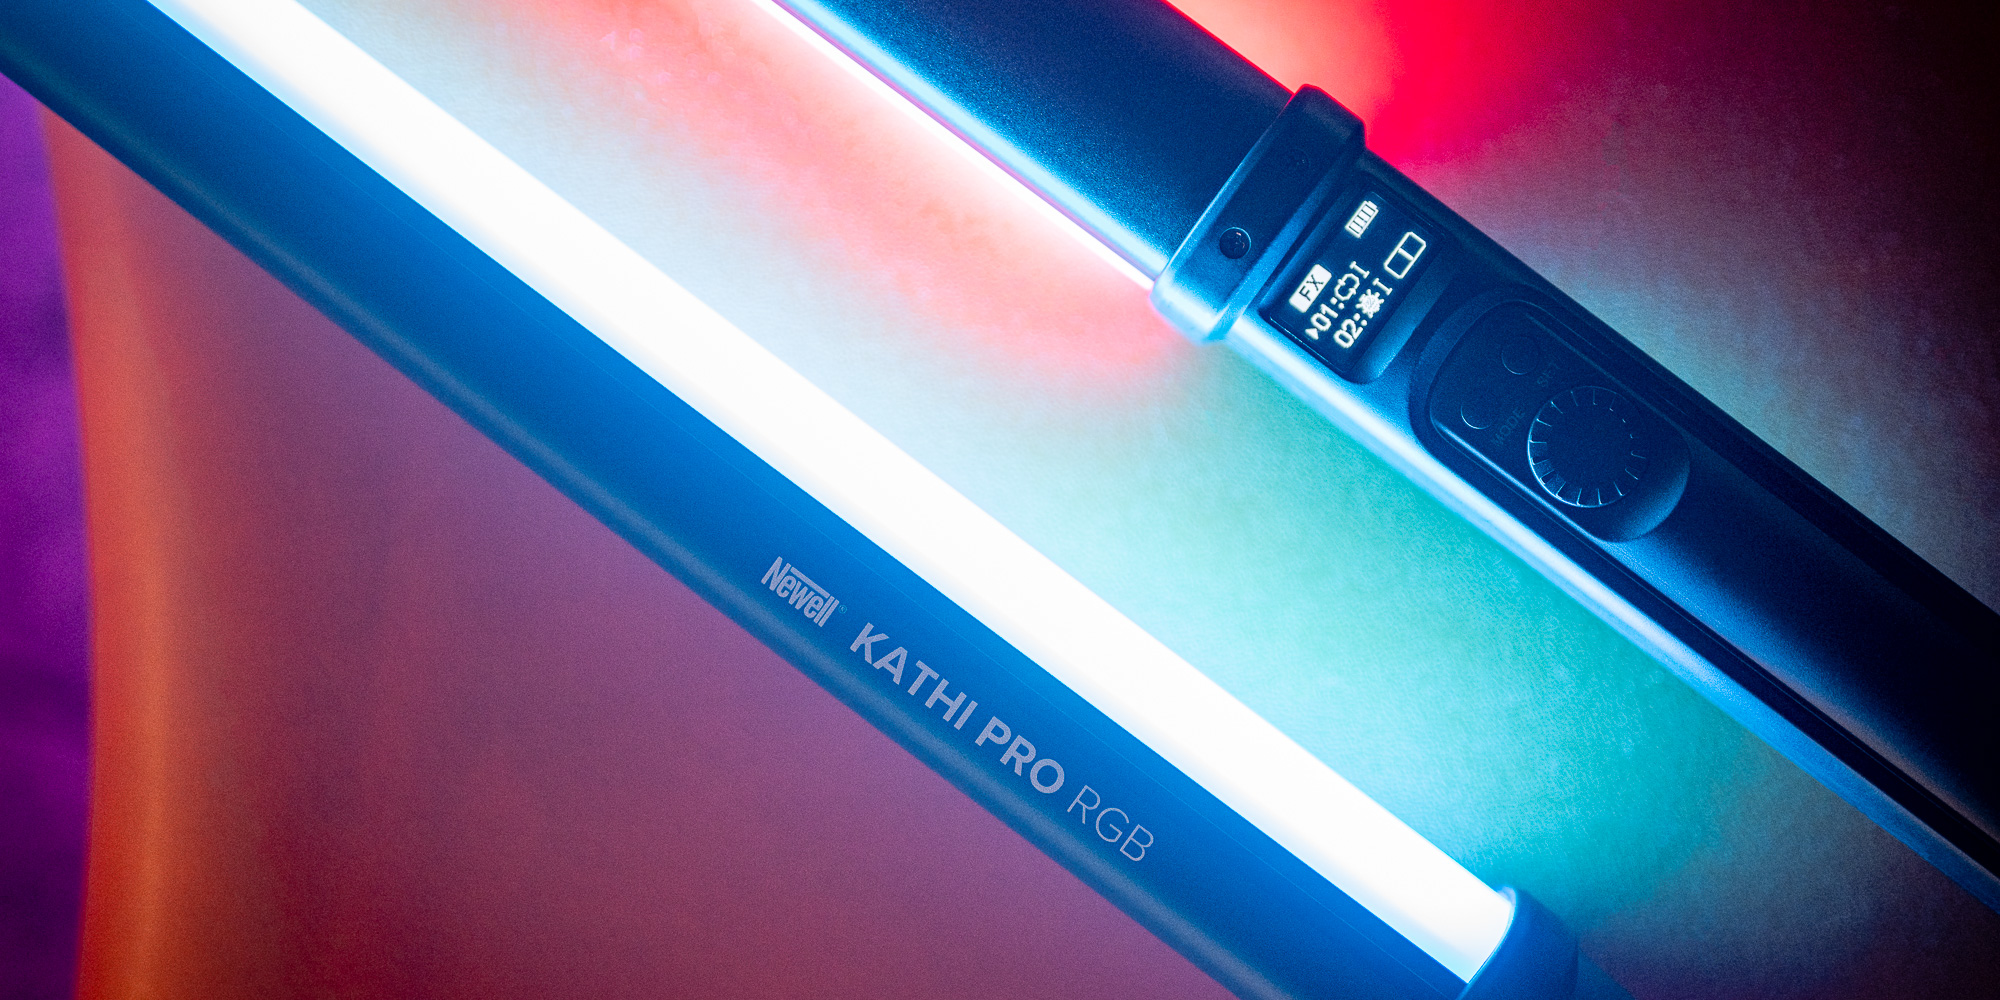 Newell RGB Kathi Pro LED lampa